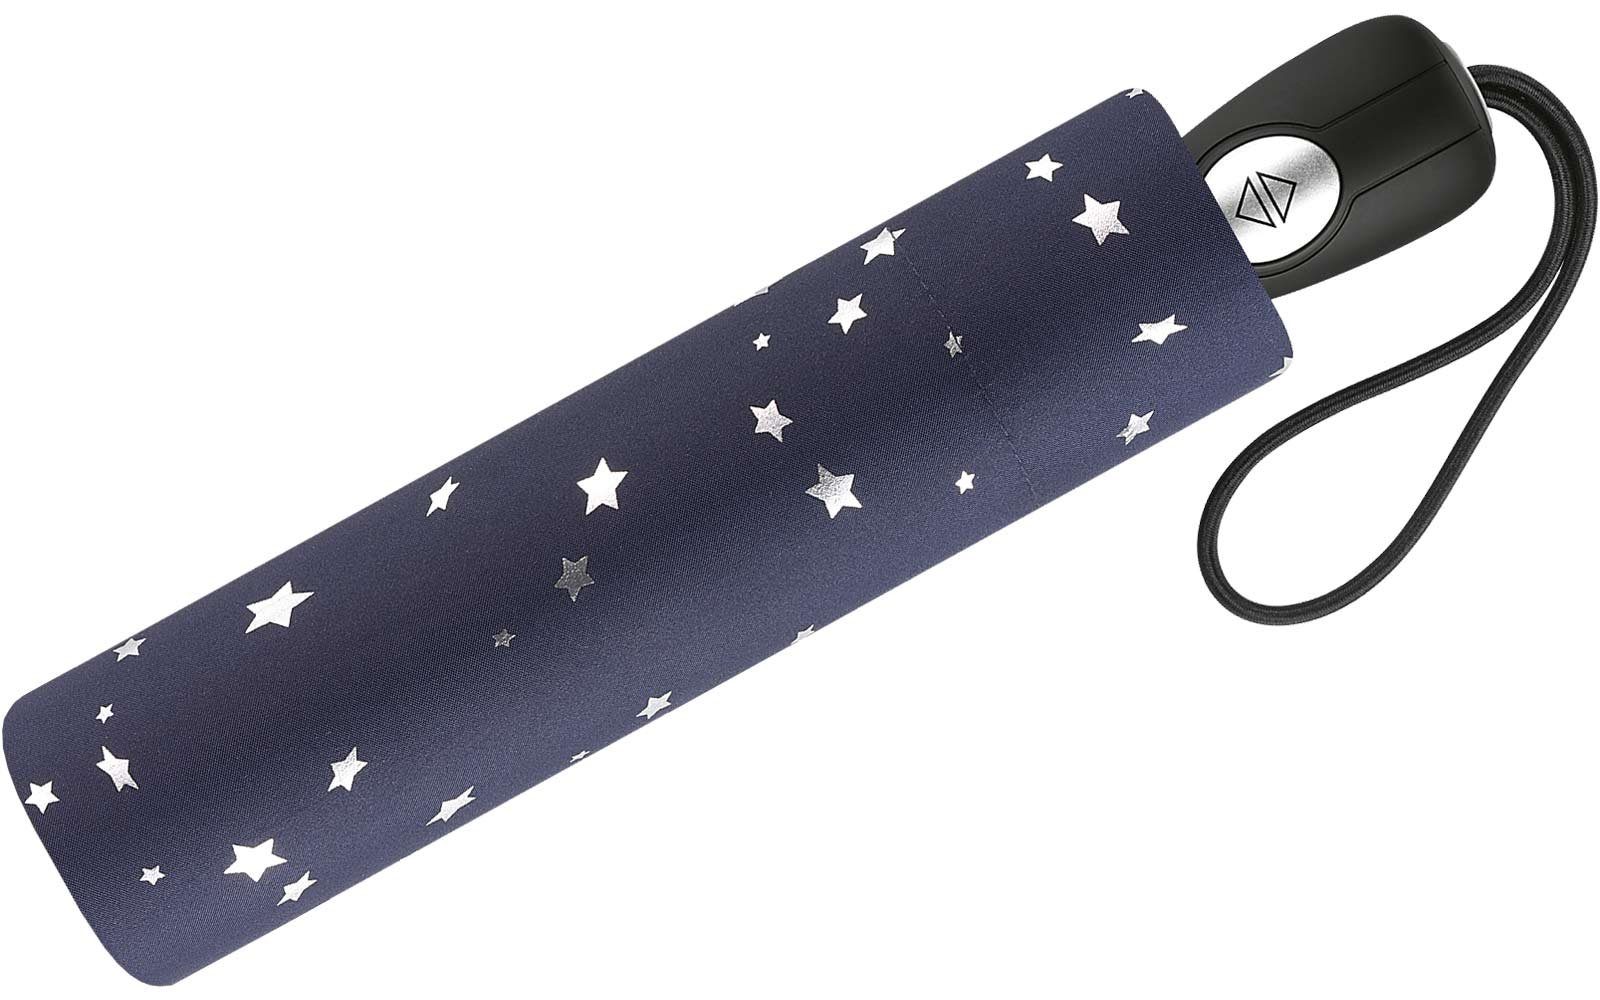 Pierre Cardin Taschenregenschirm Design Damen-Regenschirm in blau-silber mit Sterne traumhafte Auf-Zu-Automatik, verspieltem schöner